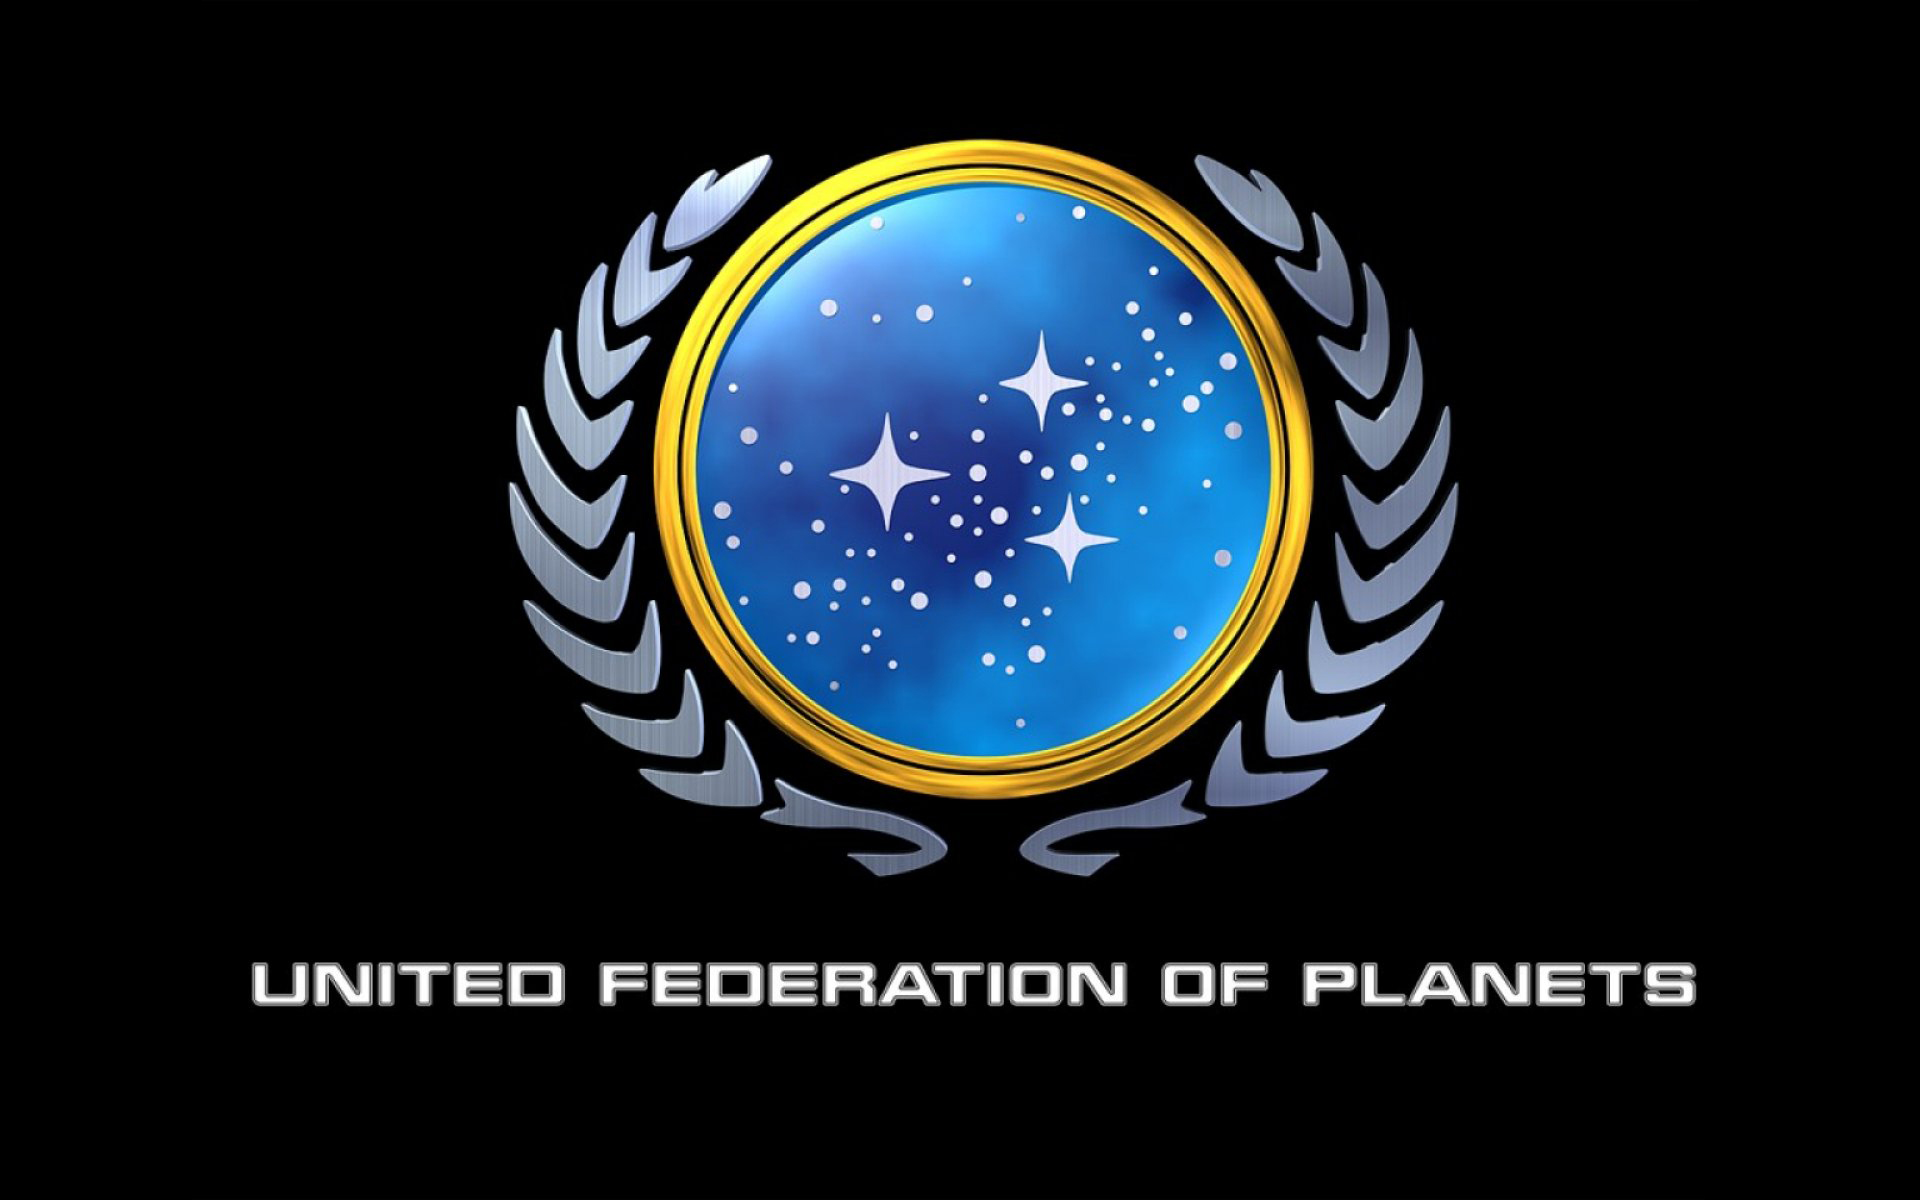 звездный путь, логотипы, Объединенная Федерация Планет, Star Trek логотипы - обои на рабочий стол